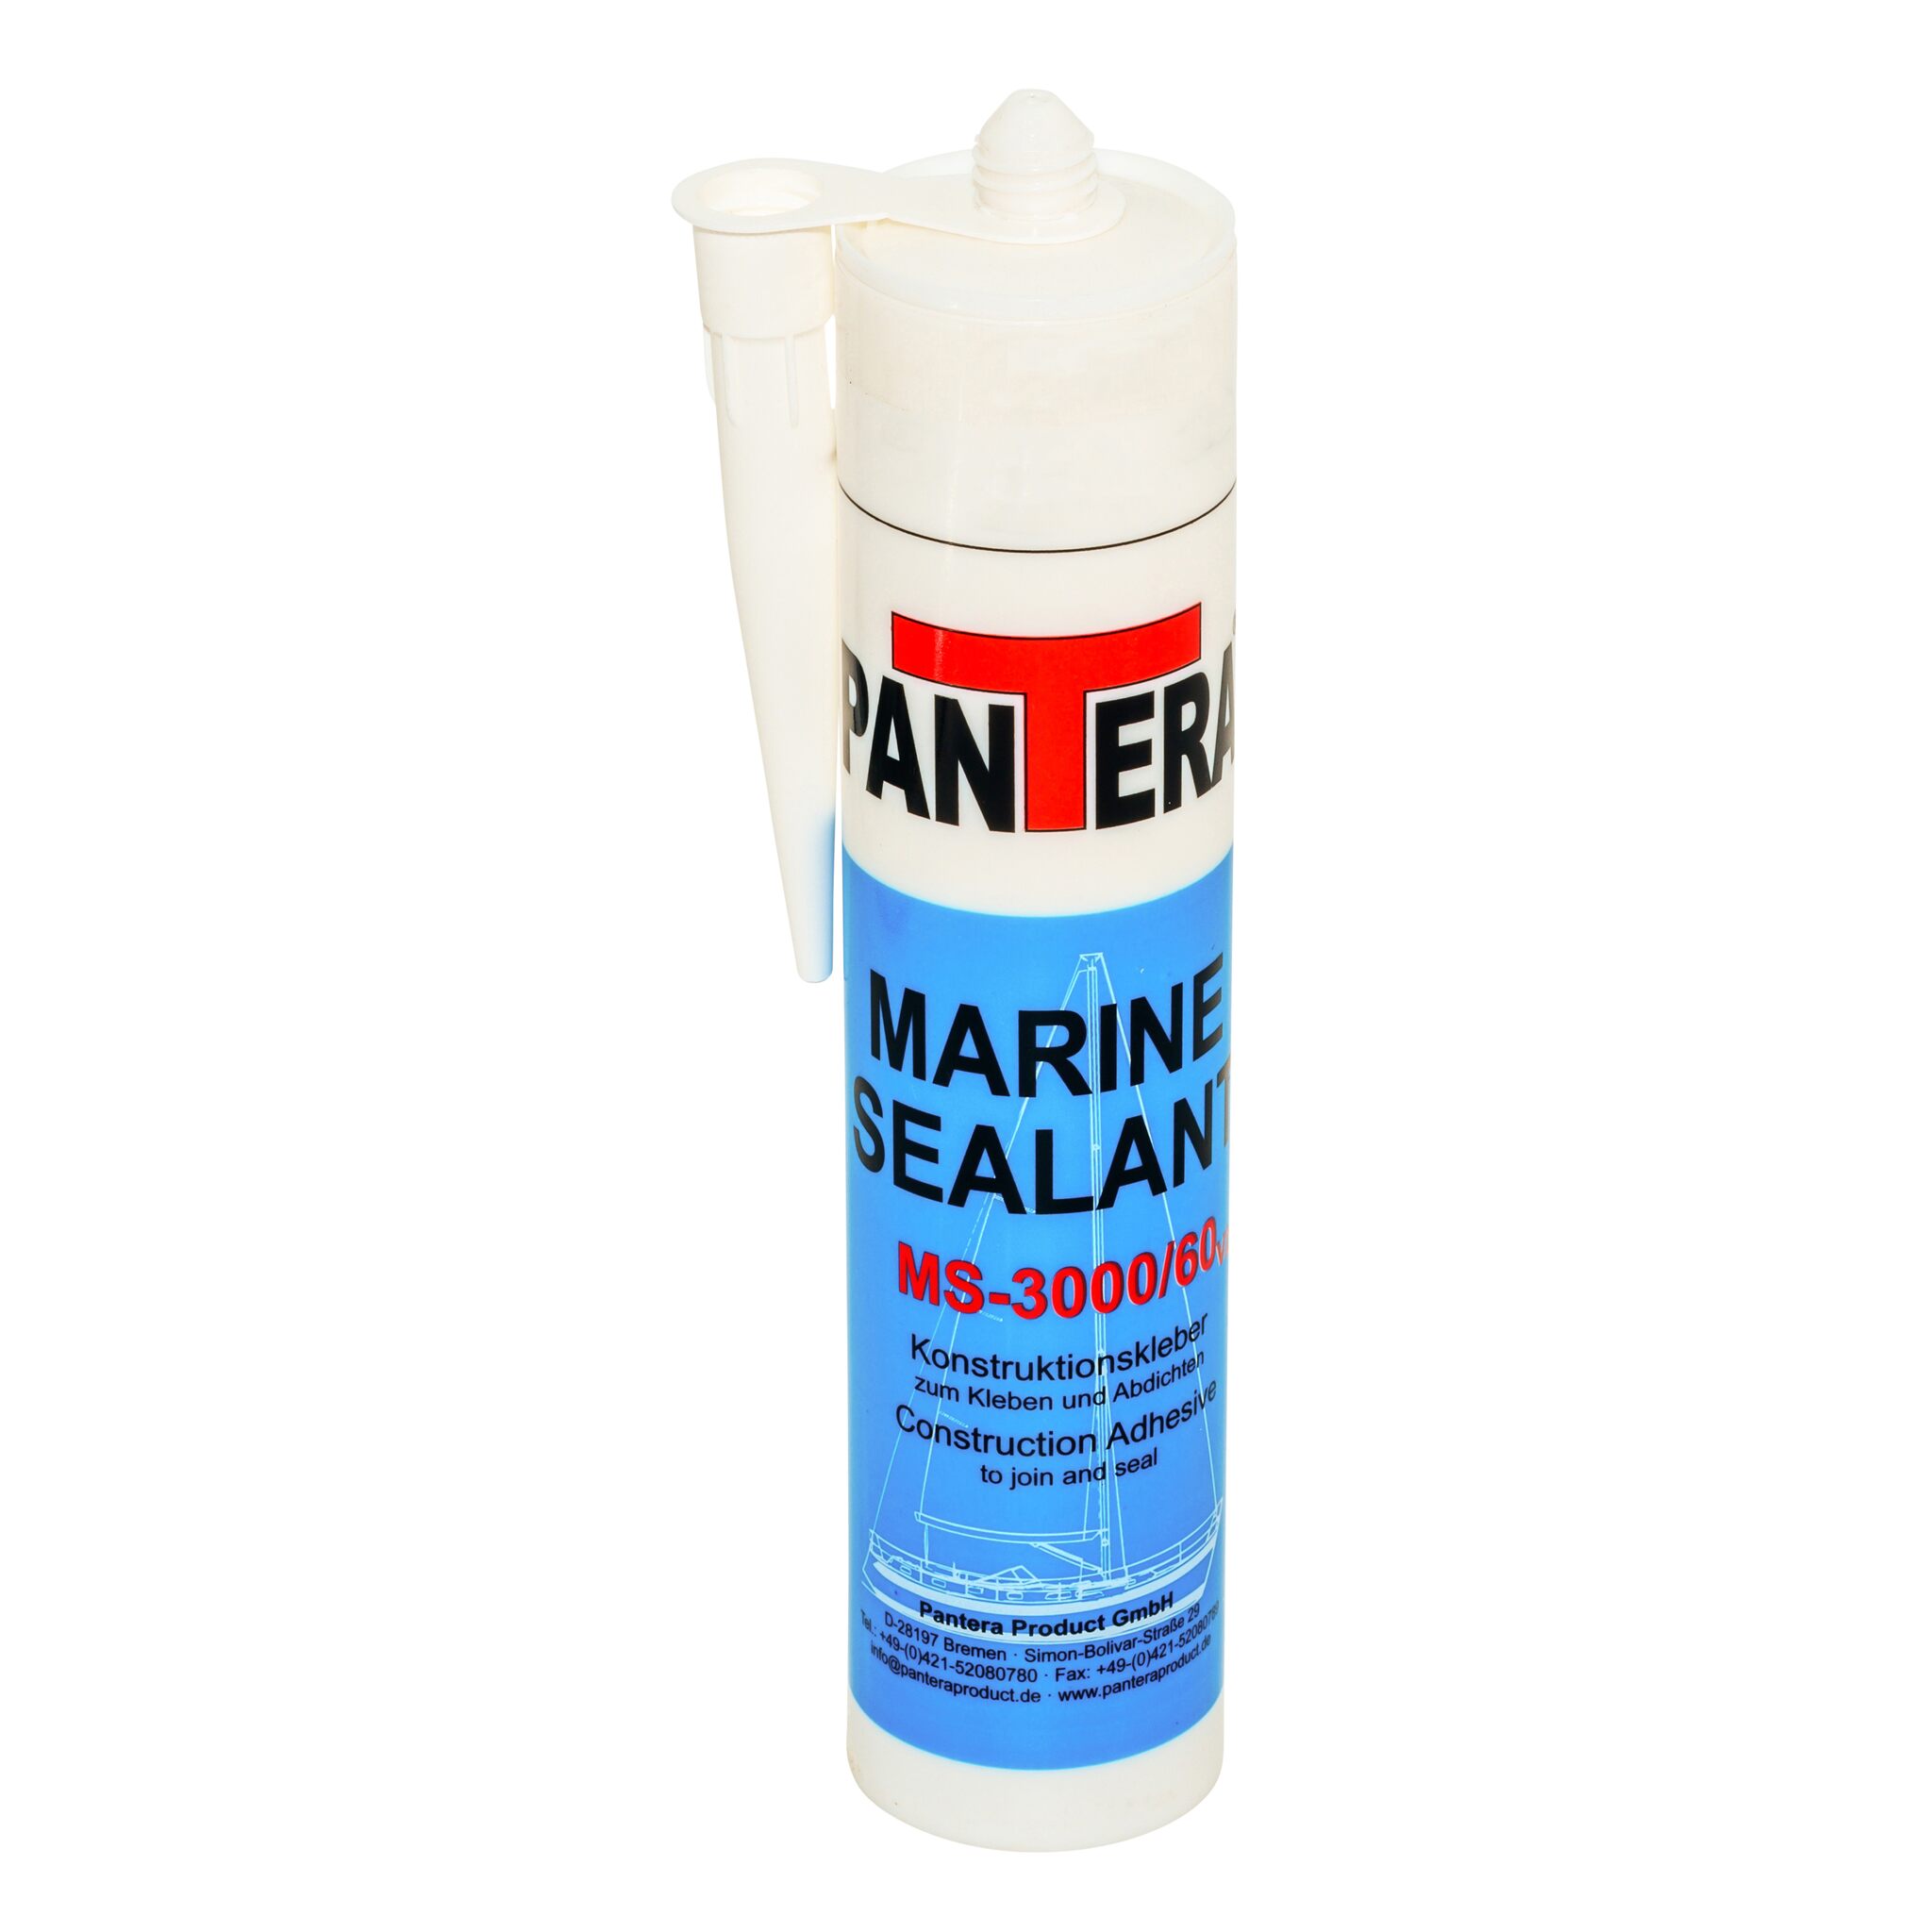 Adhesive Pantera Marine Sealant MS-3000/60 V2